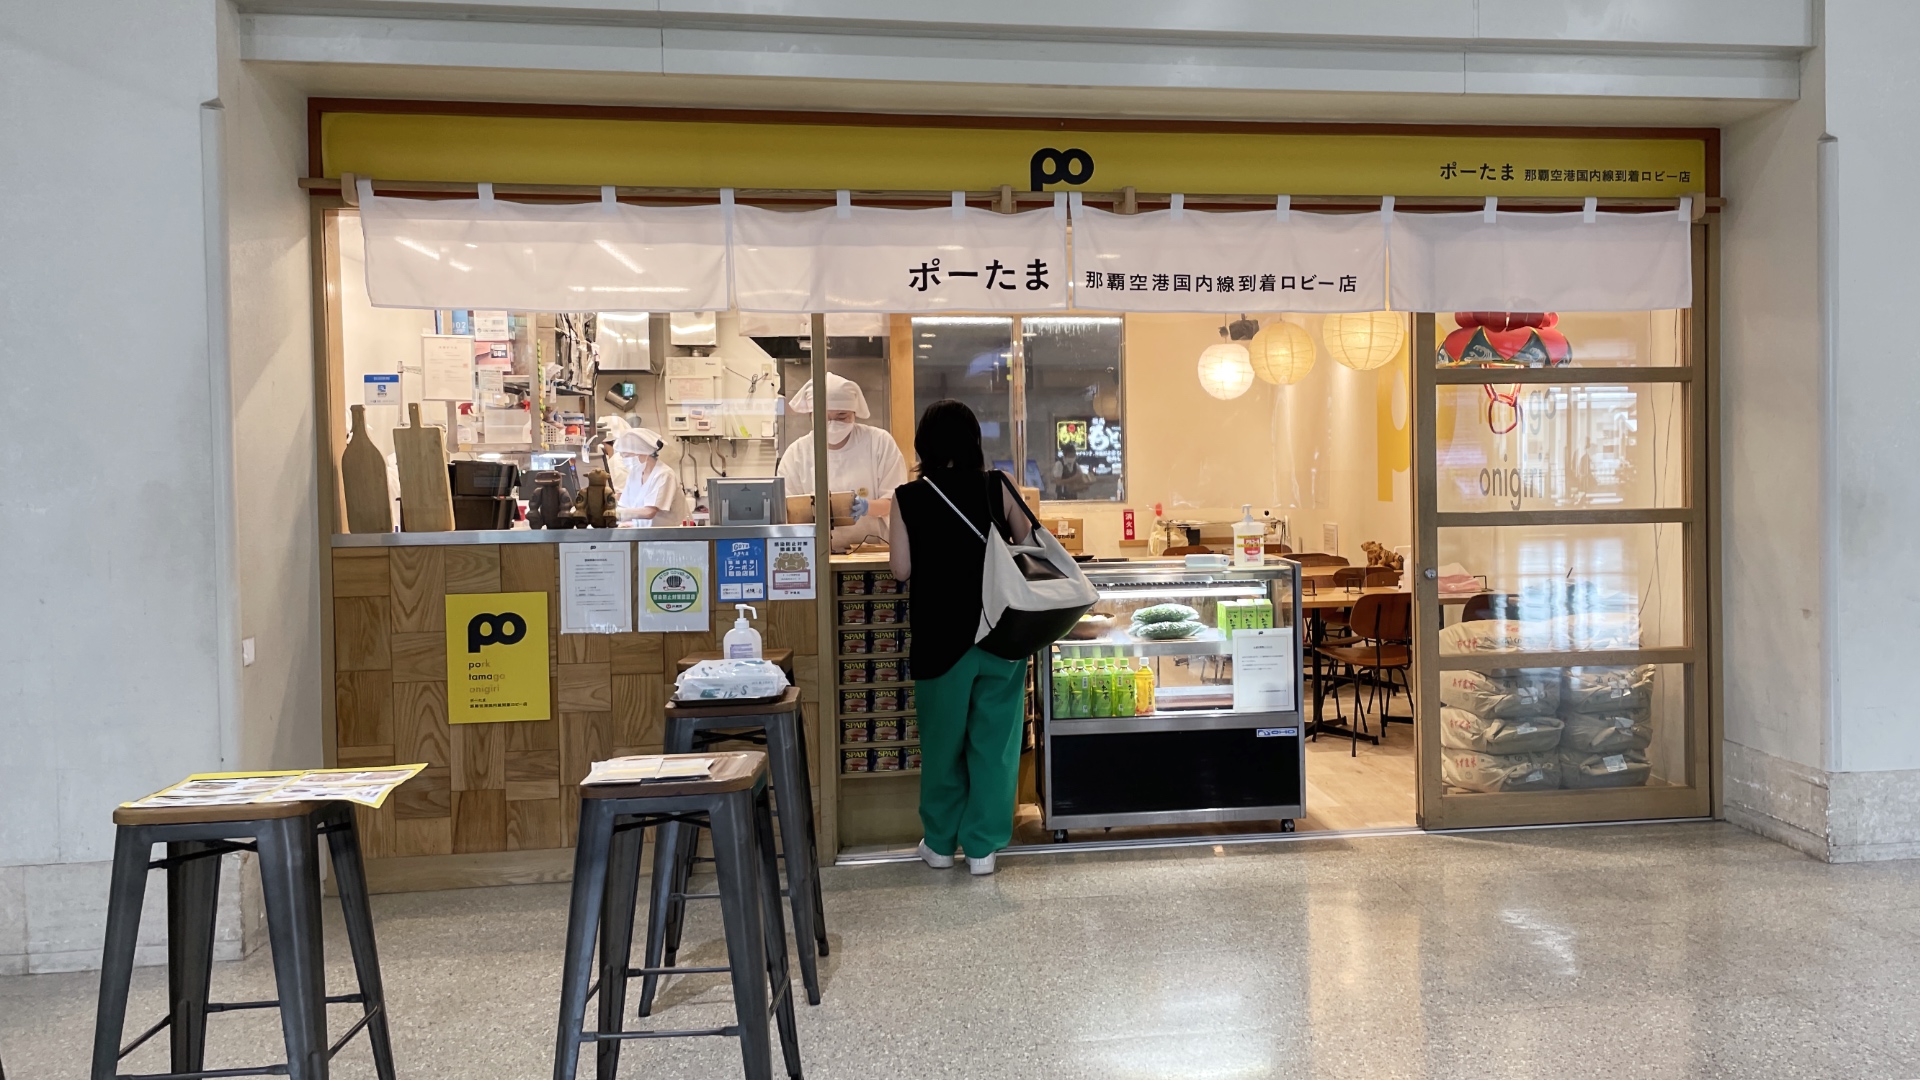 Der Ableger von Potama im Flughafen Naha in Okinawa.